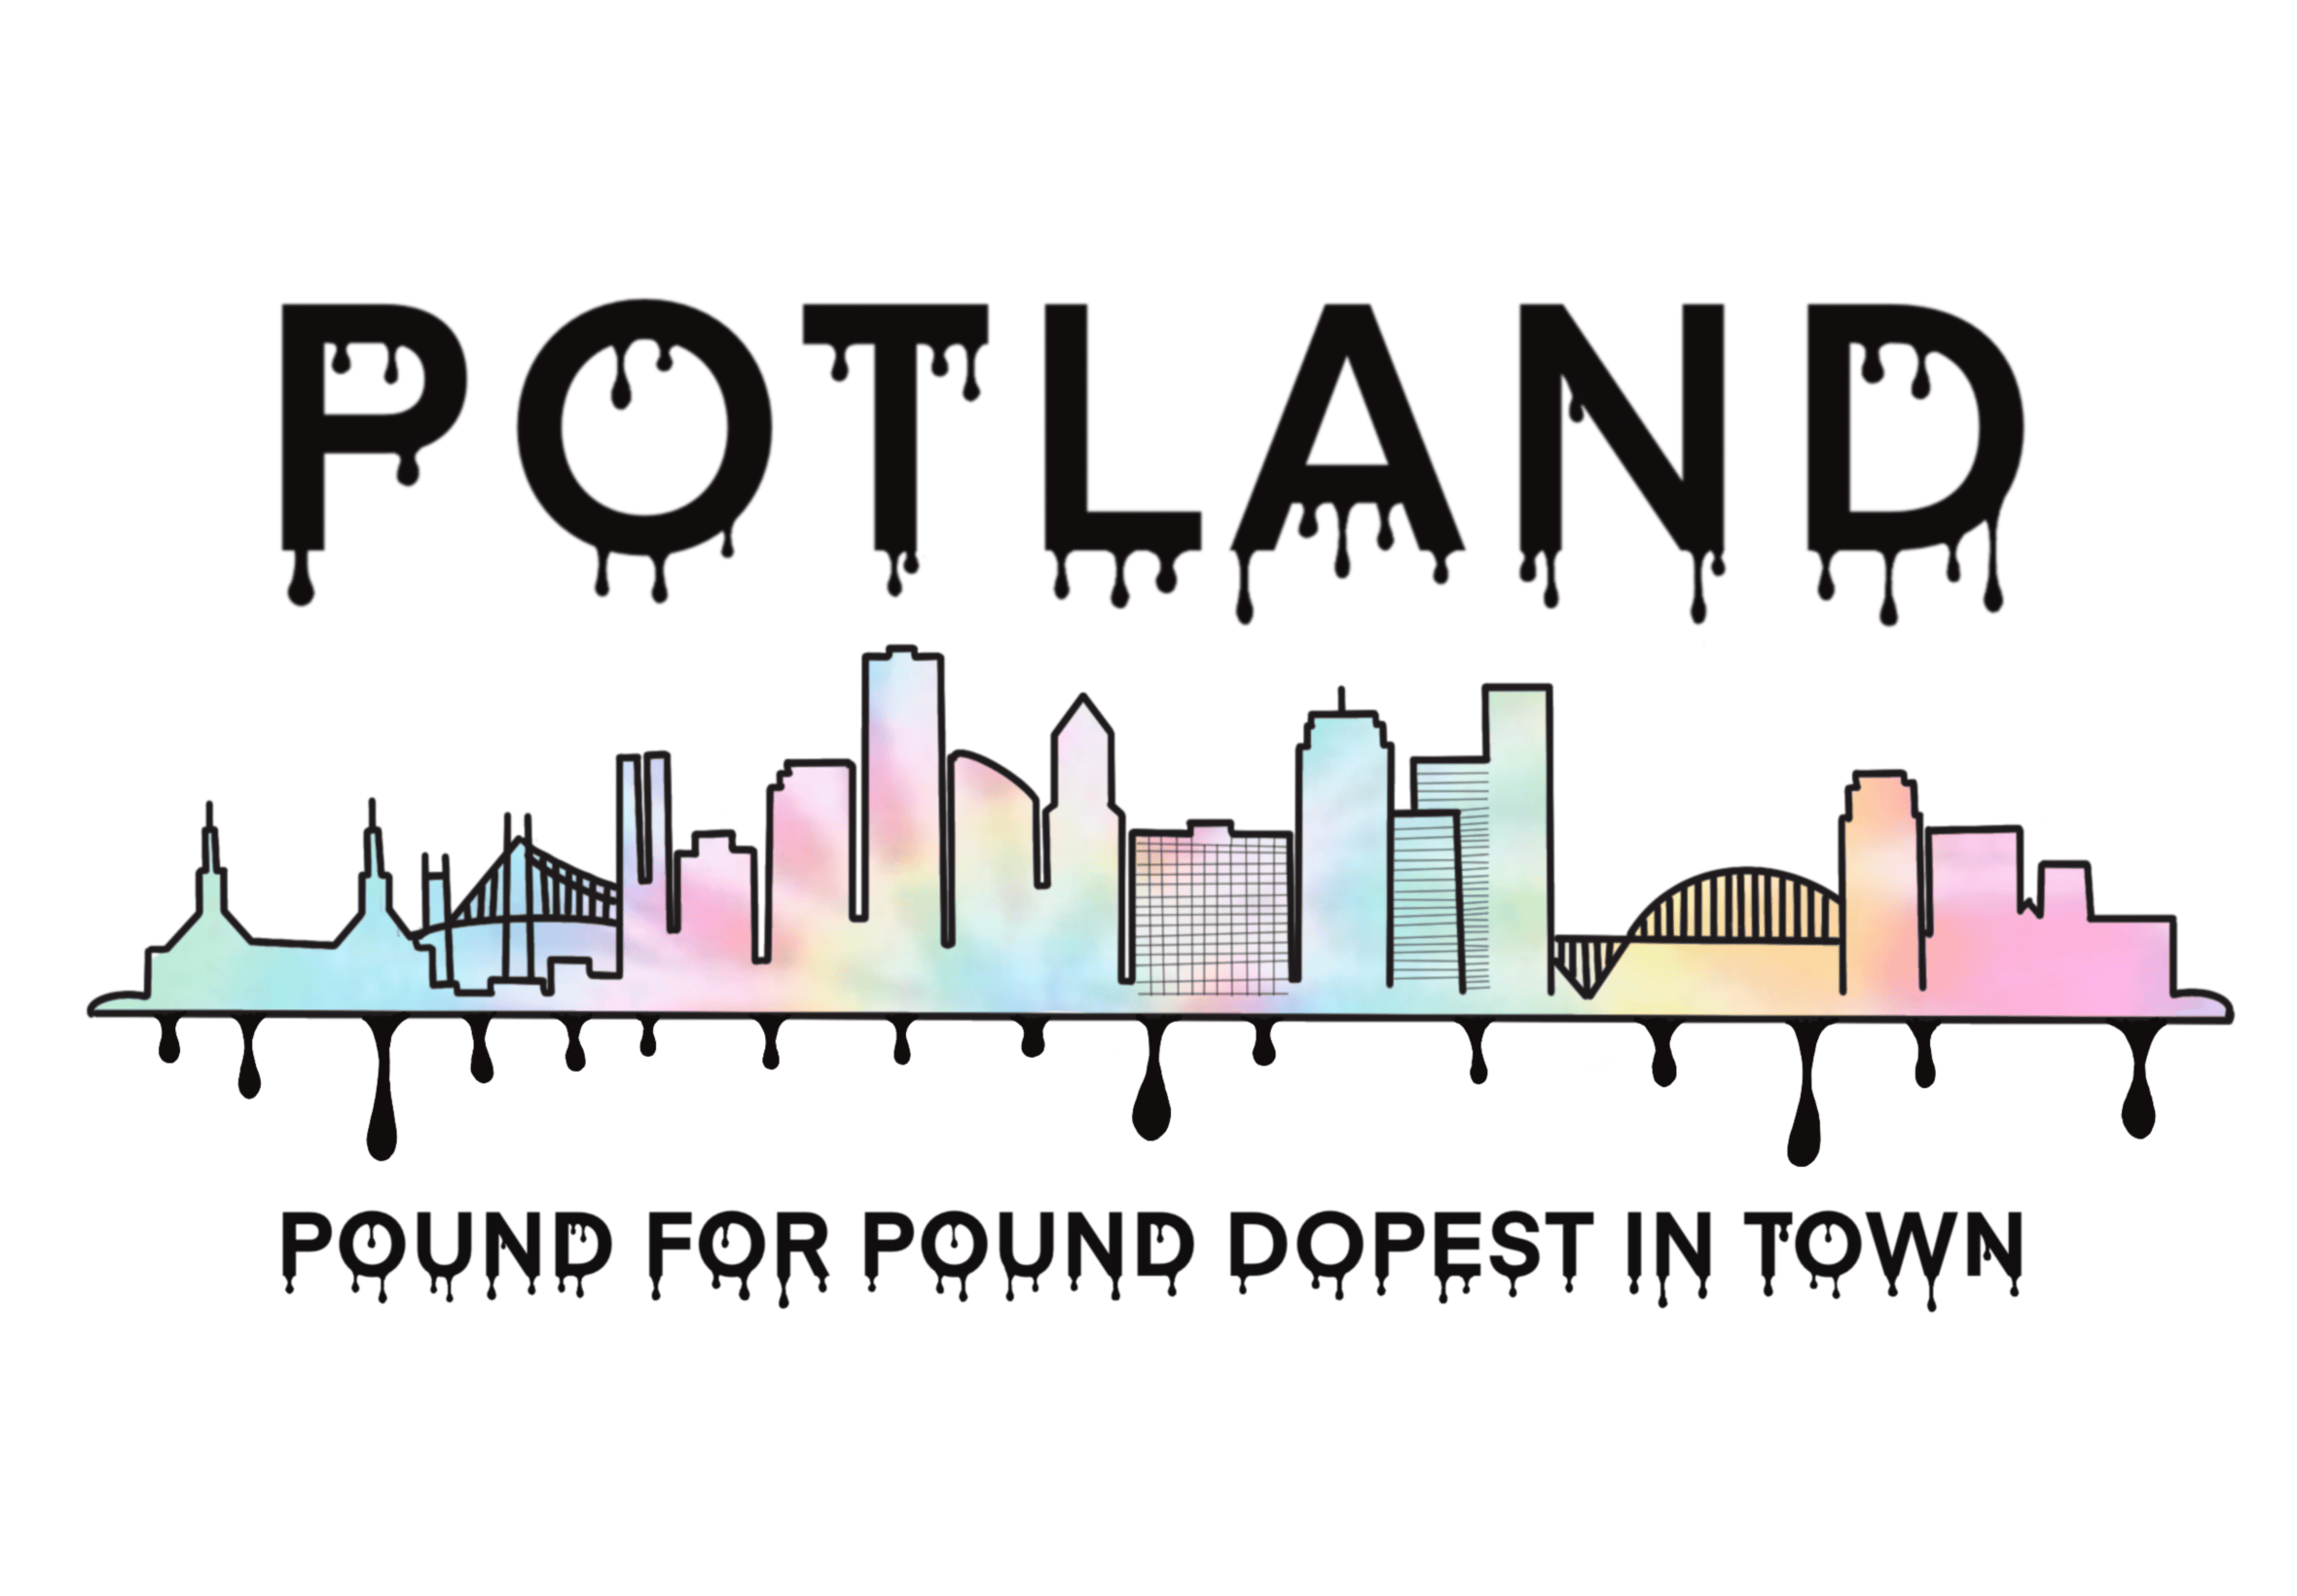 The Potland logo